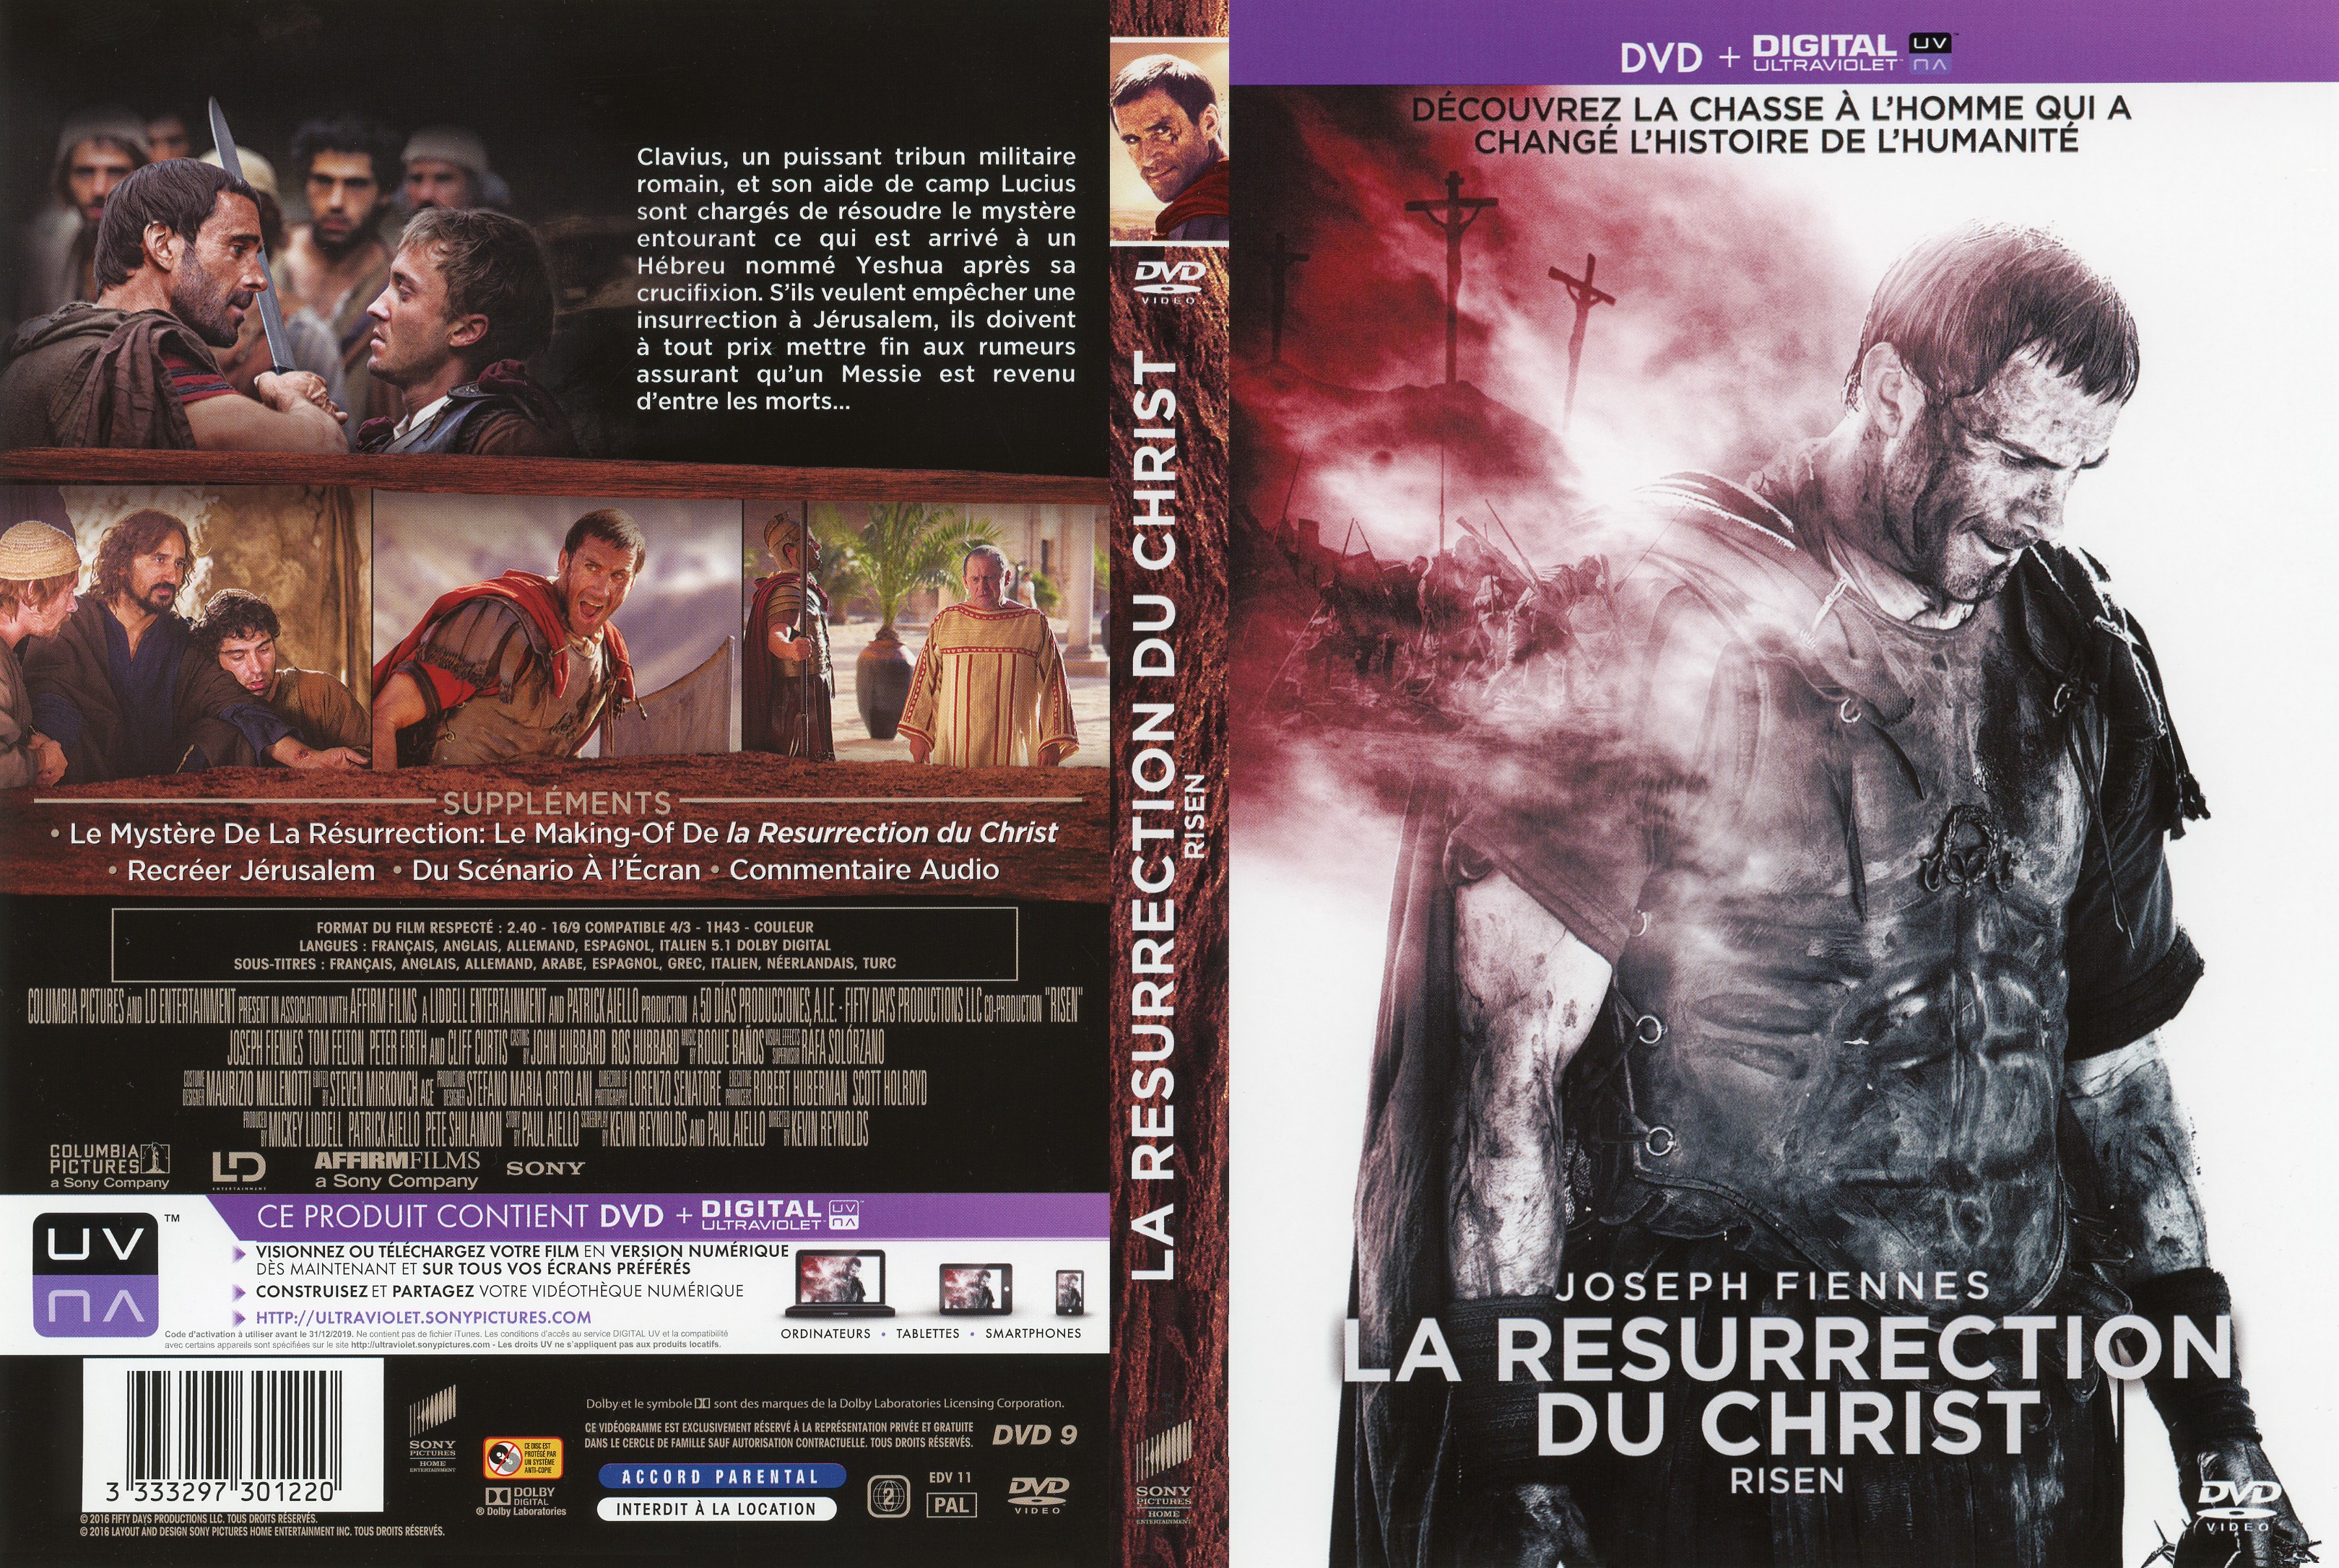 Jaquette DVD La Resurrection du Christ